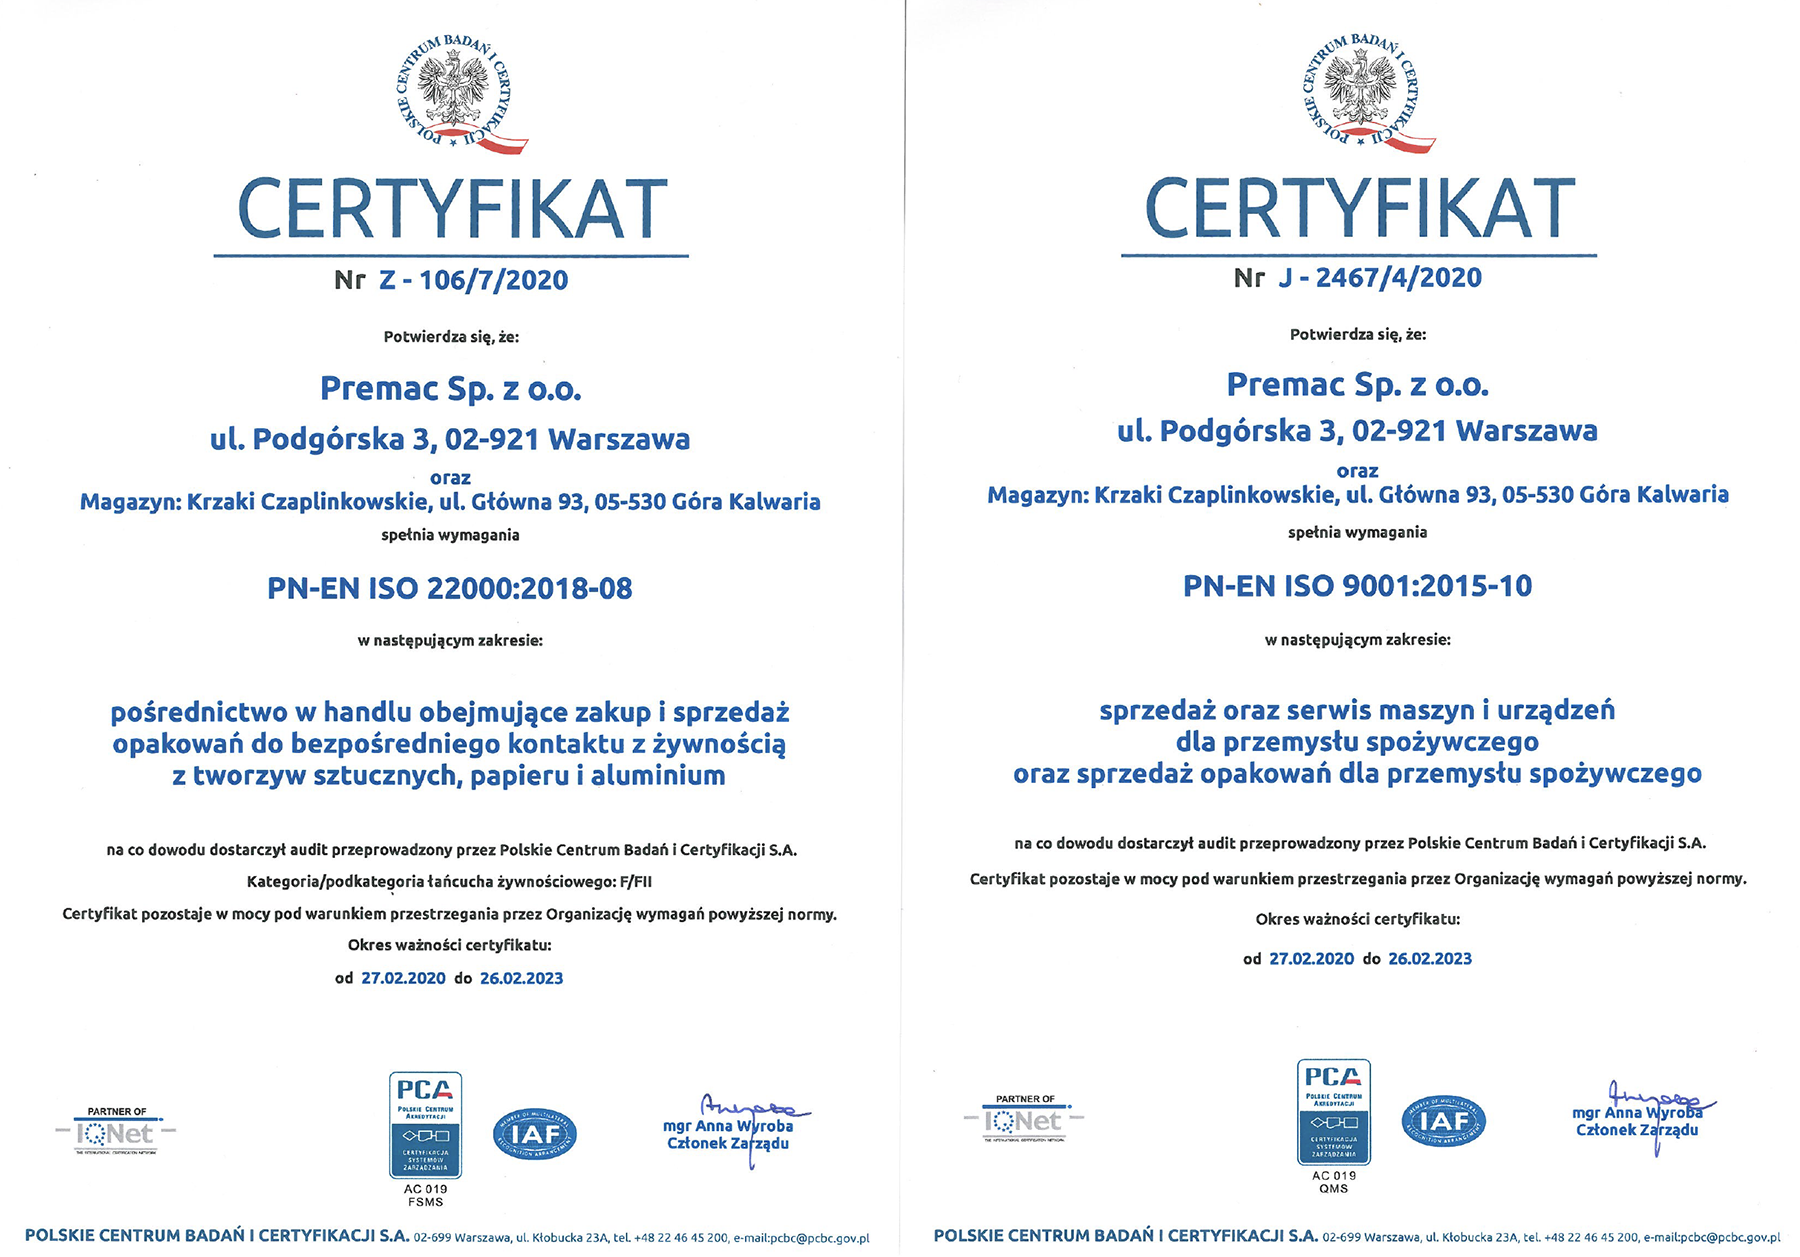 PN EN ISO 22000 + 9001